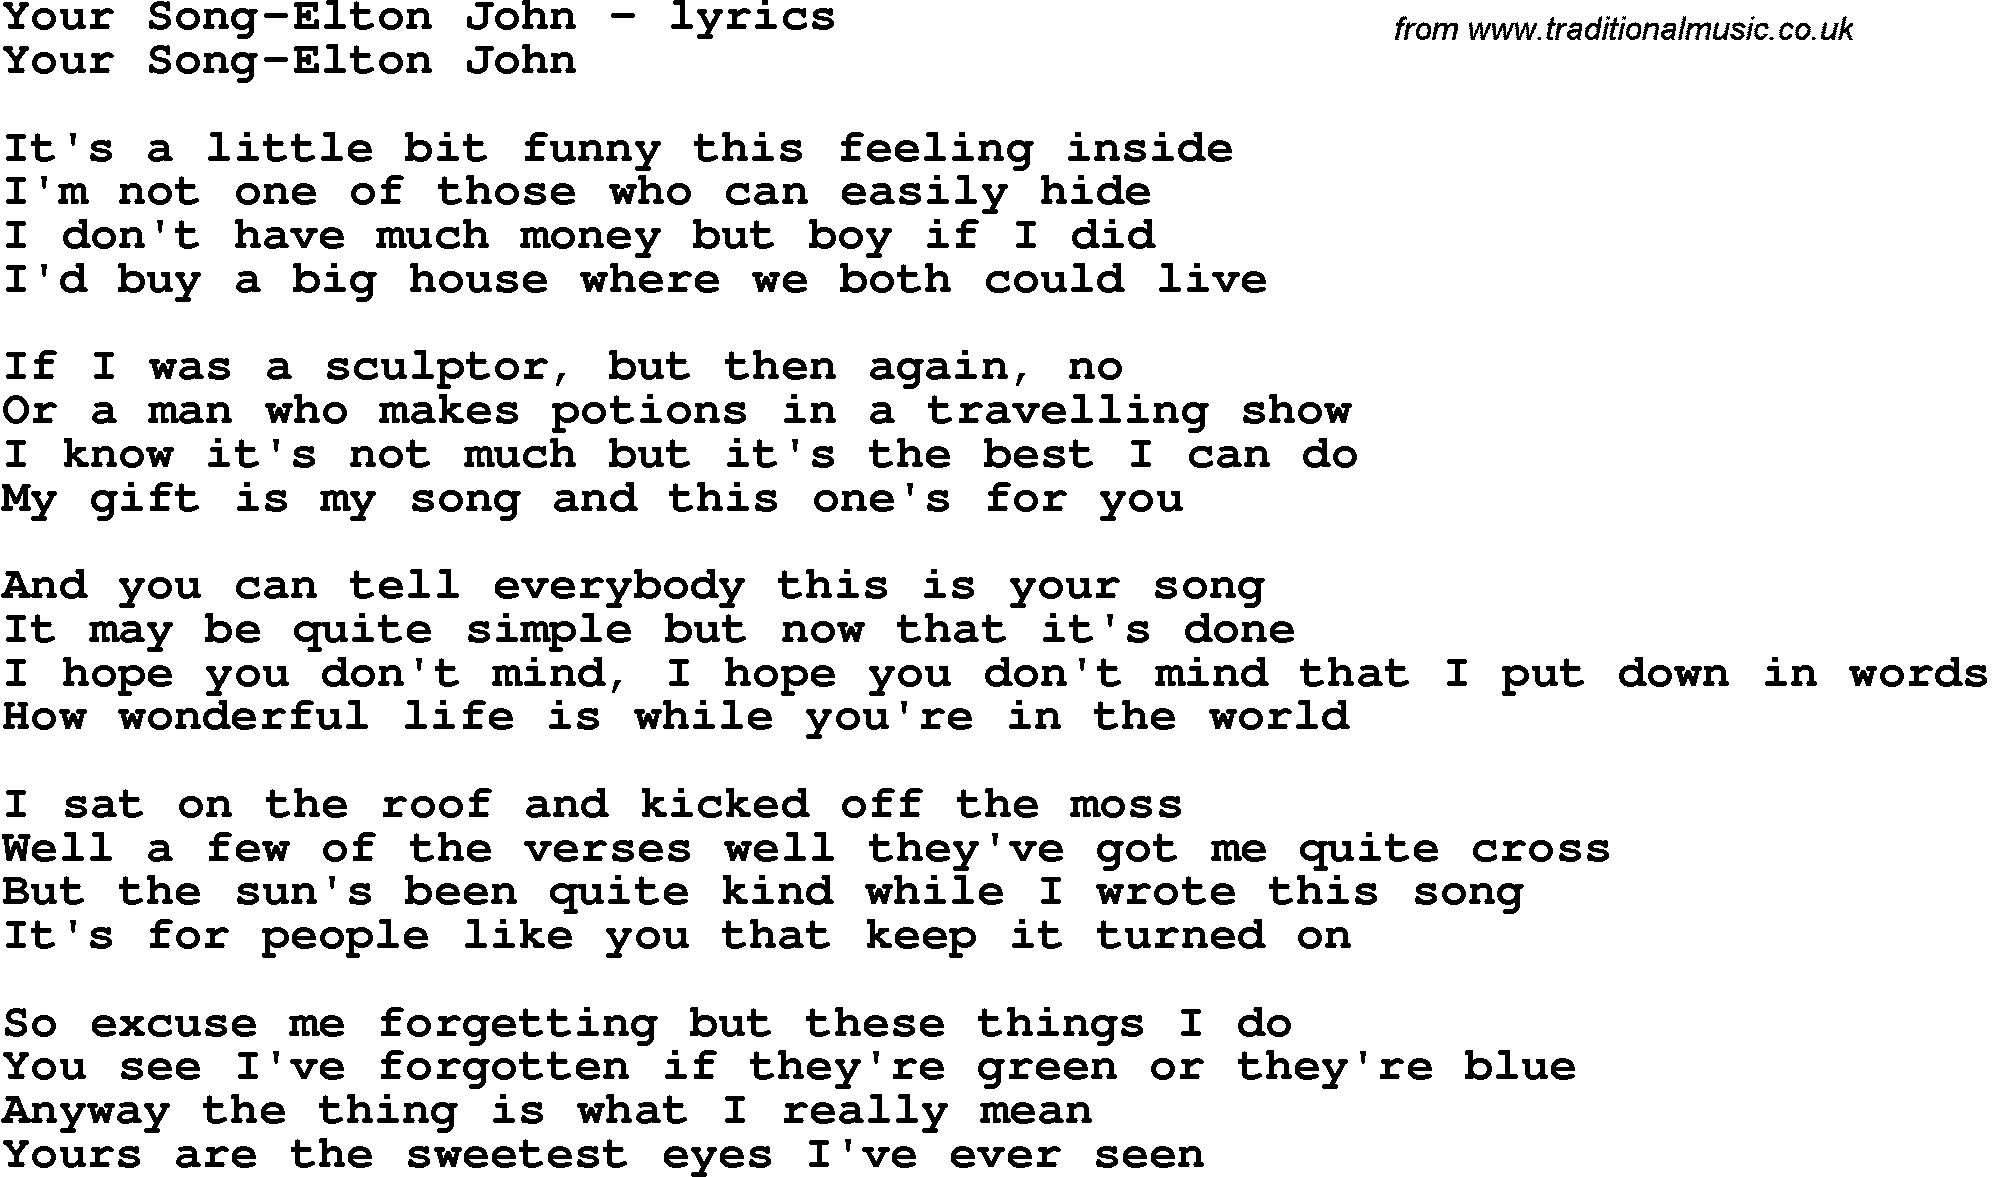 Love Song Lyrics For Your Song Elton John